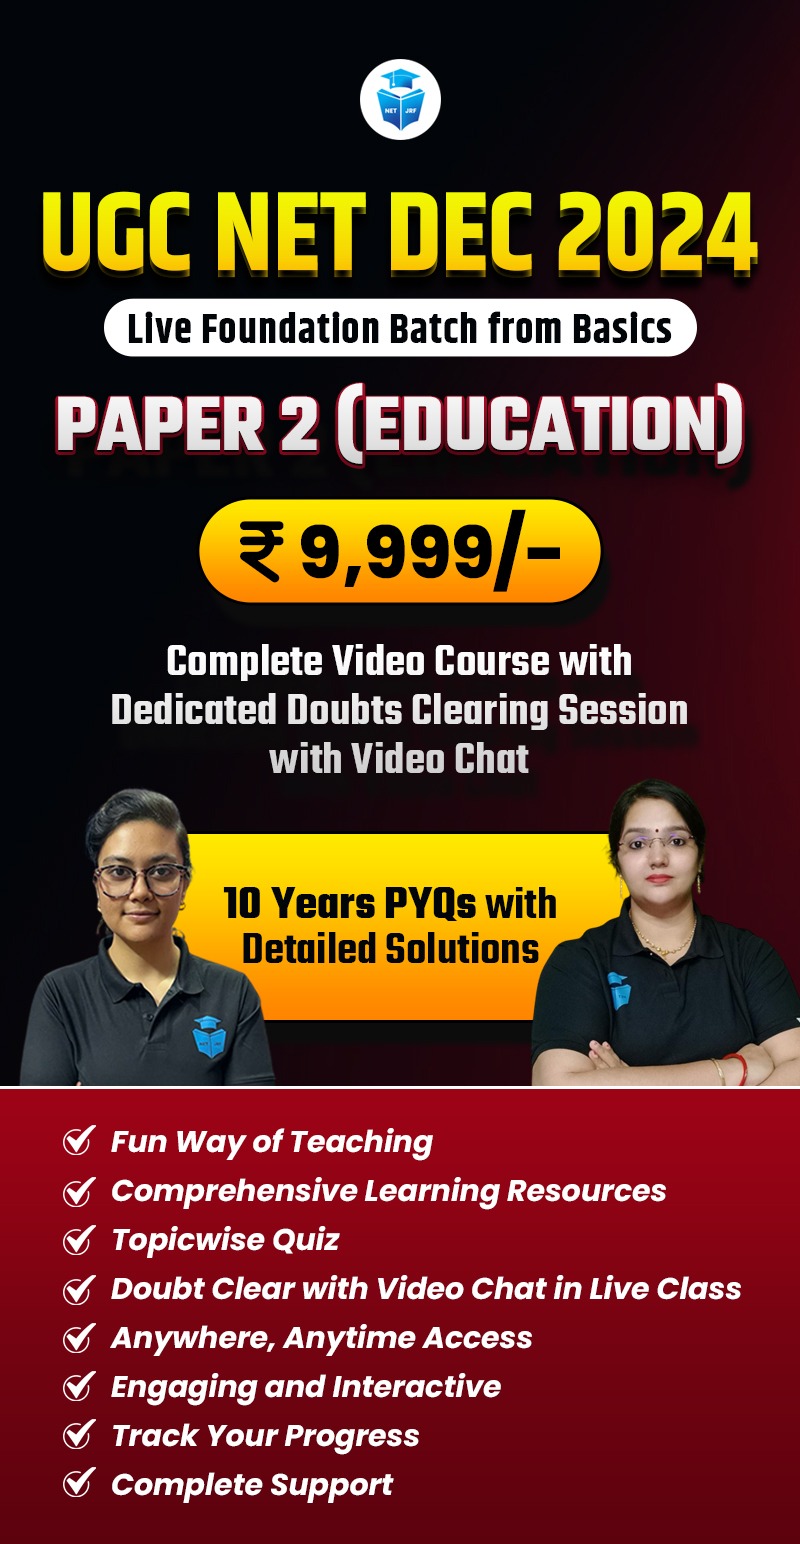 Dec 2024 UGC NET Complete Education Batch Paper 2